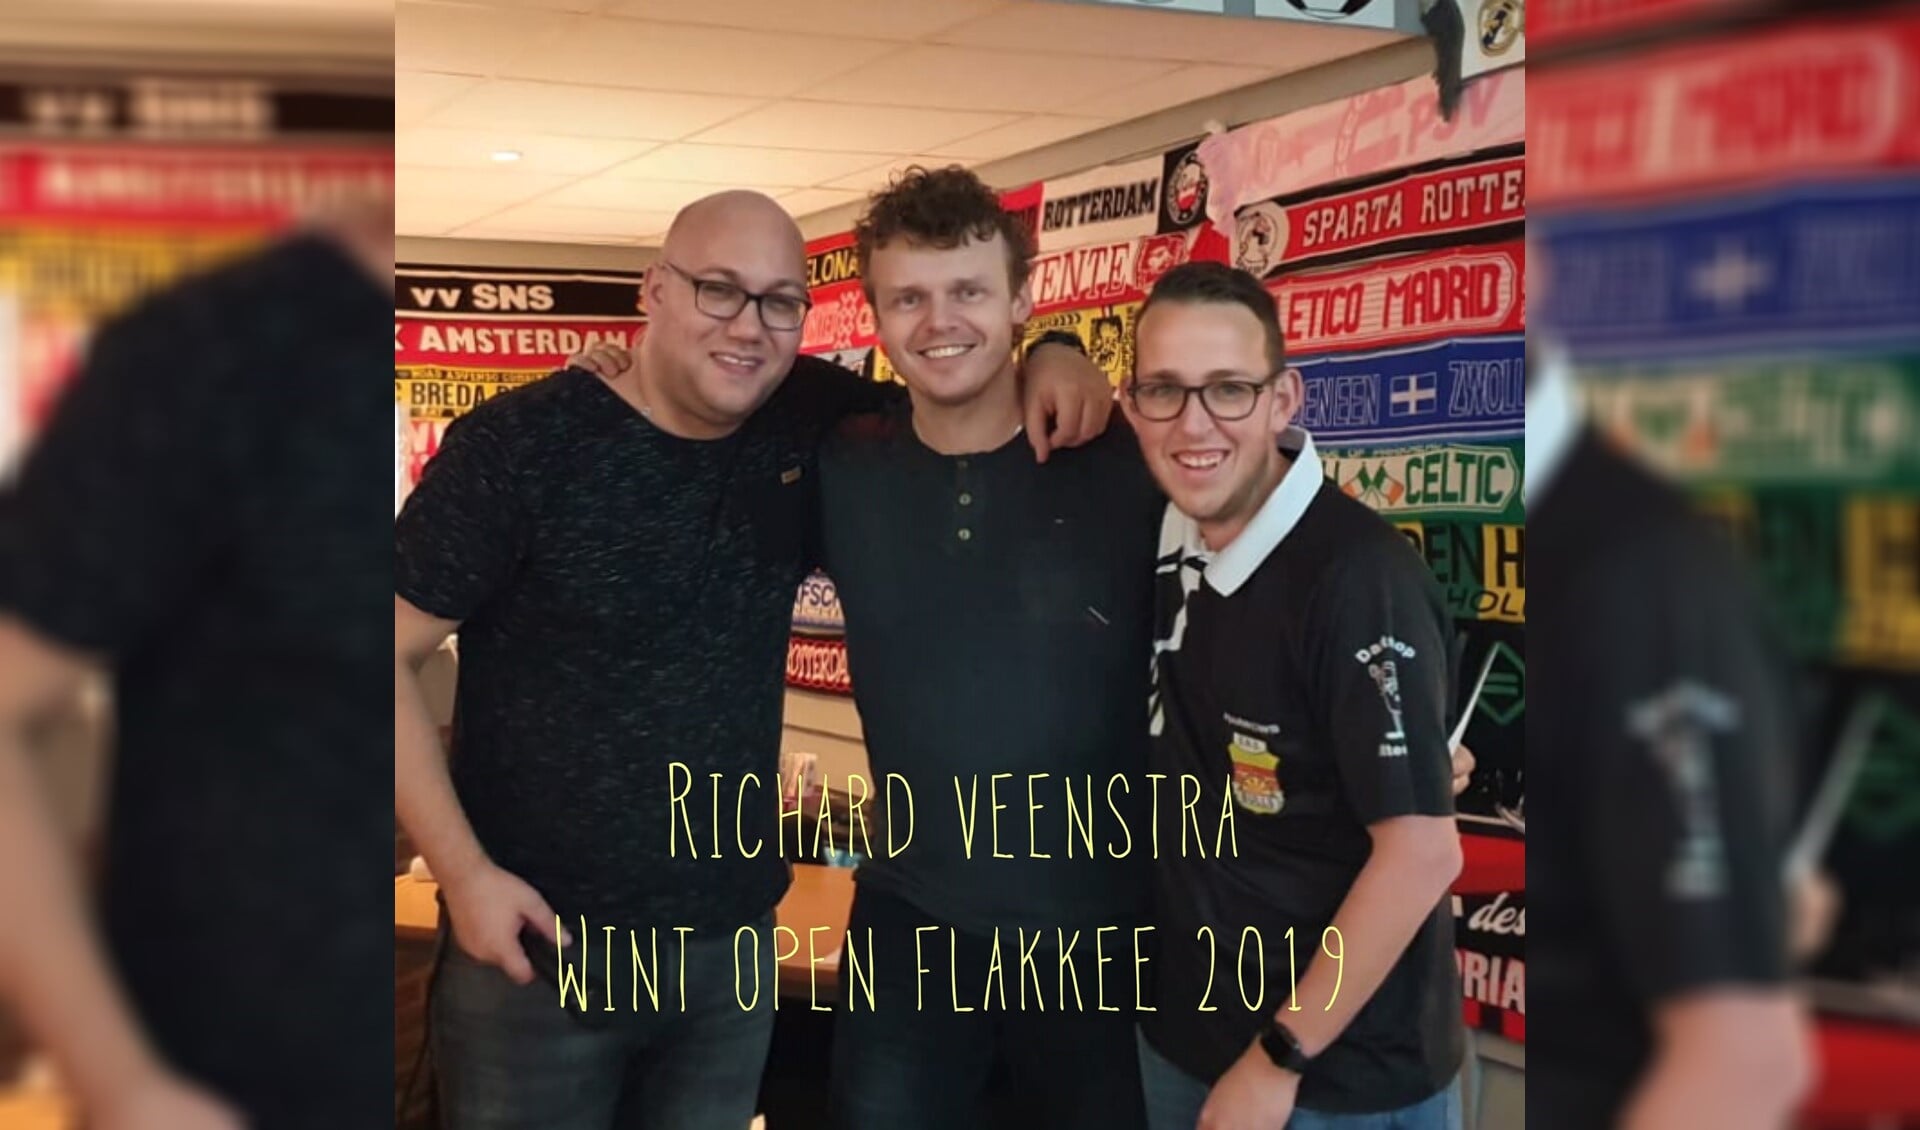 Kampioen Richard Veenstra wordt geflankeerd door John Lokken (dartshop Kattestaart ) en Kiley Schuurman (SNS).